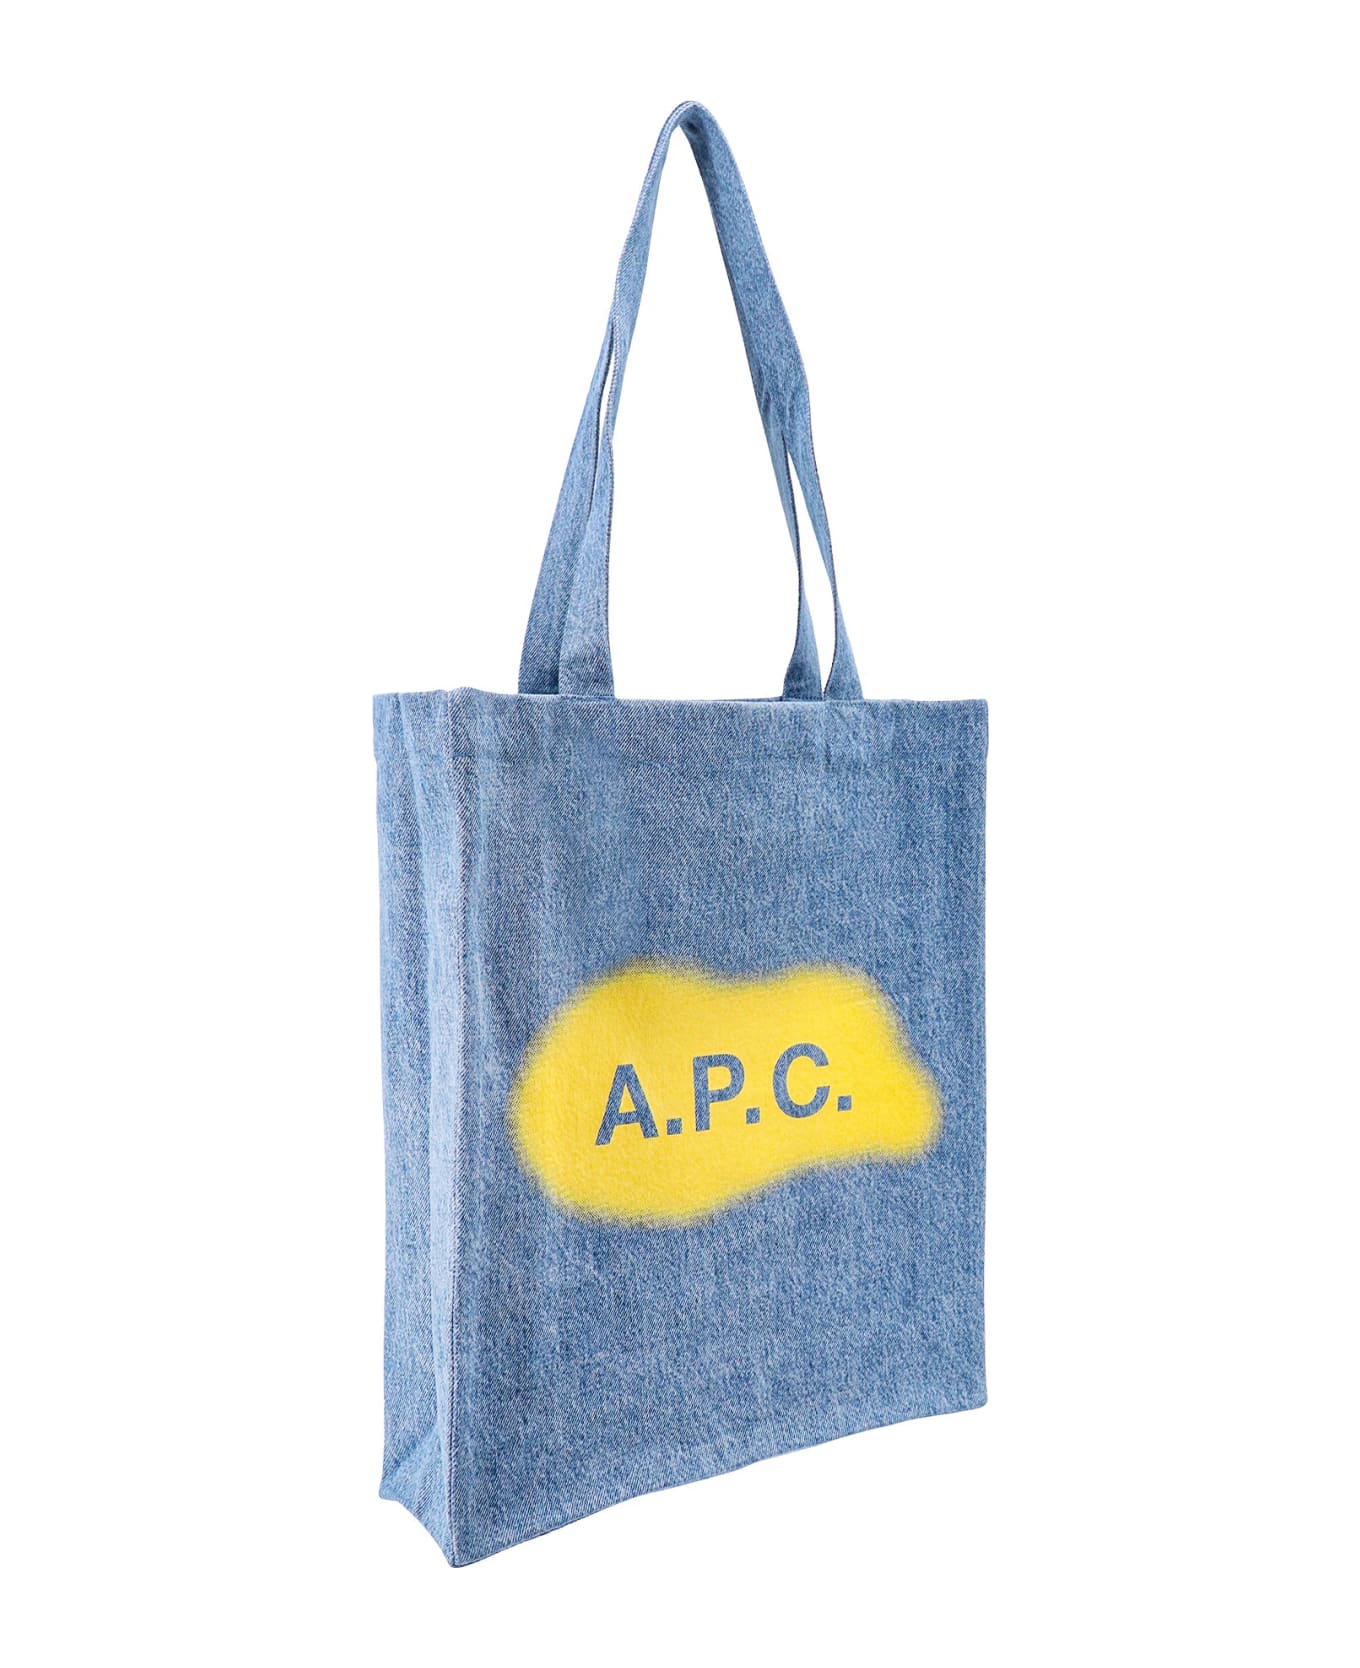 A.P.C. Tote Bag - Blue